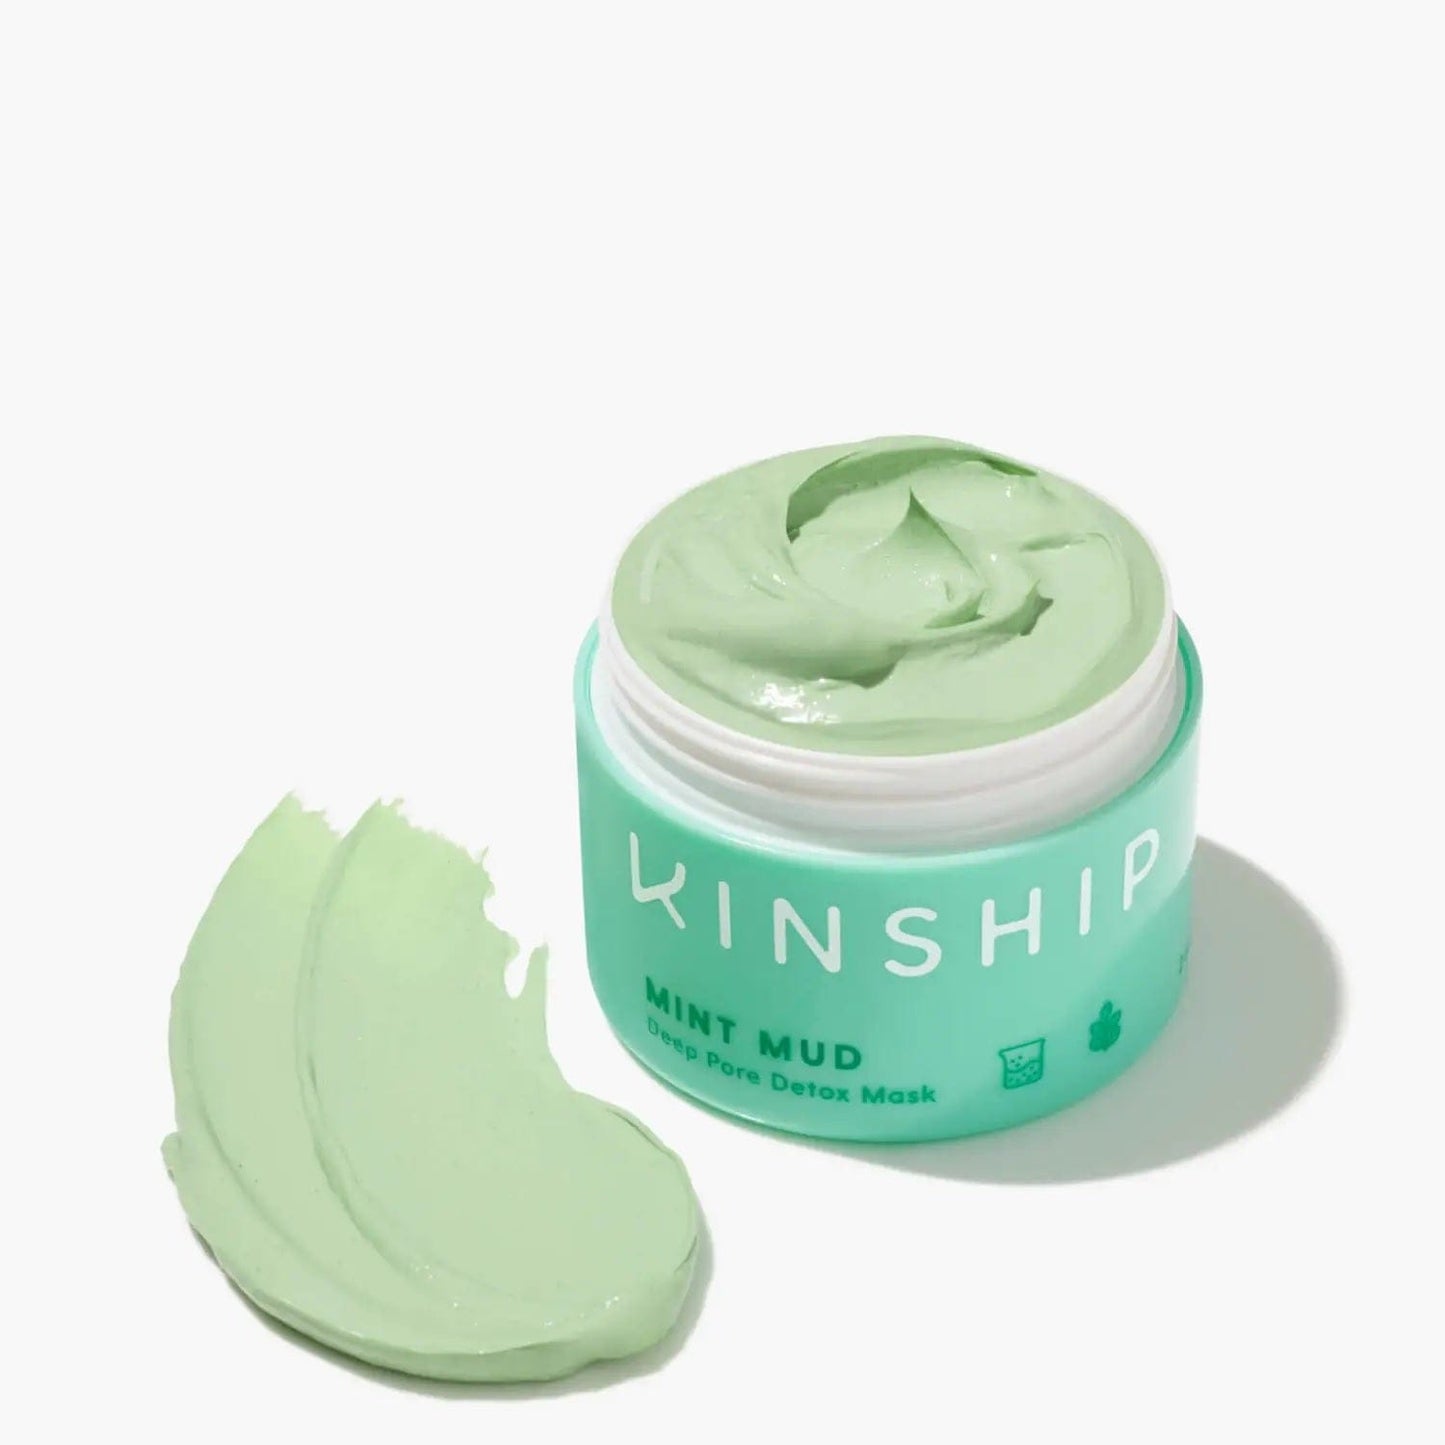 Kinship Beauty Kinship Mint Mud Deep Pore Detox Mask 57ml